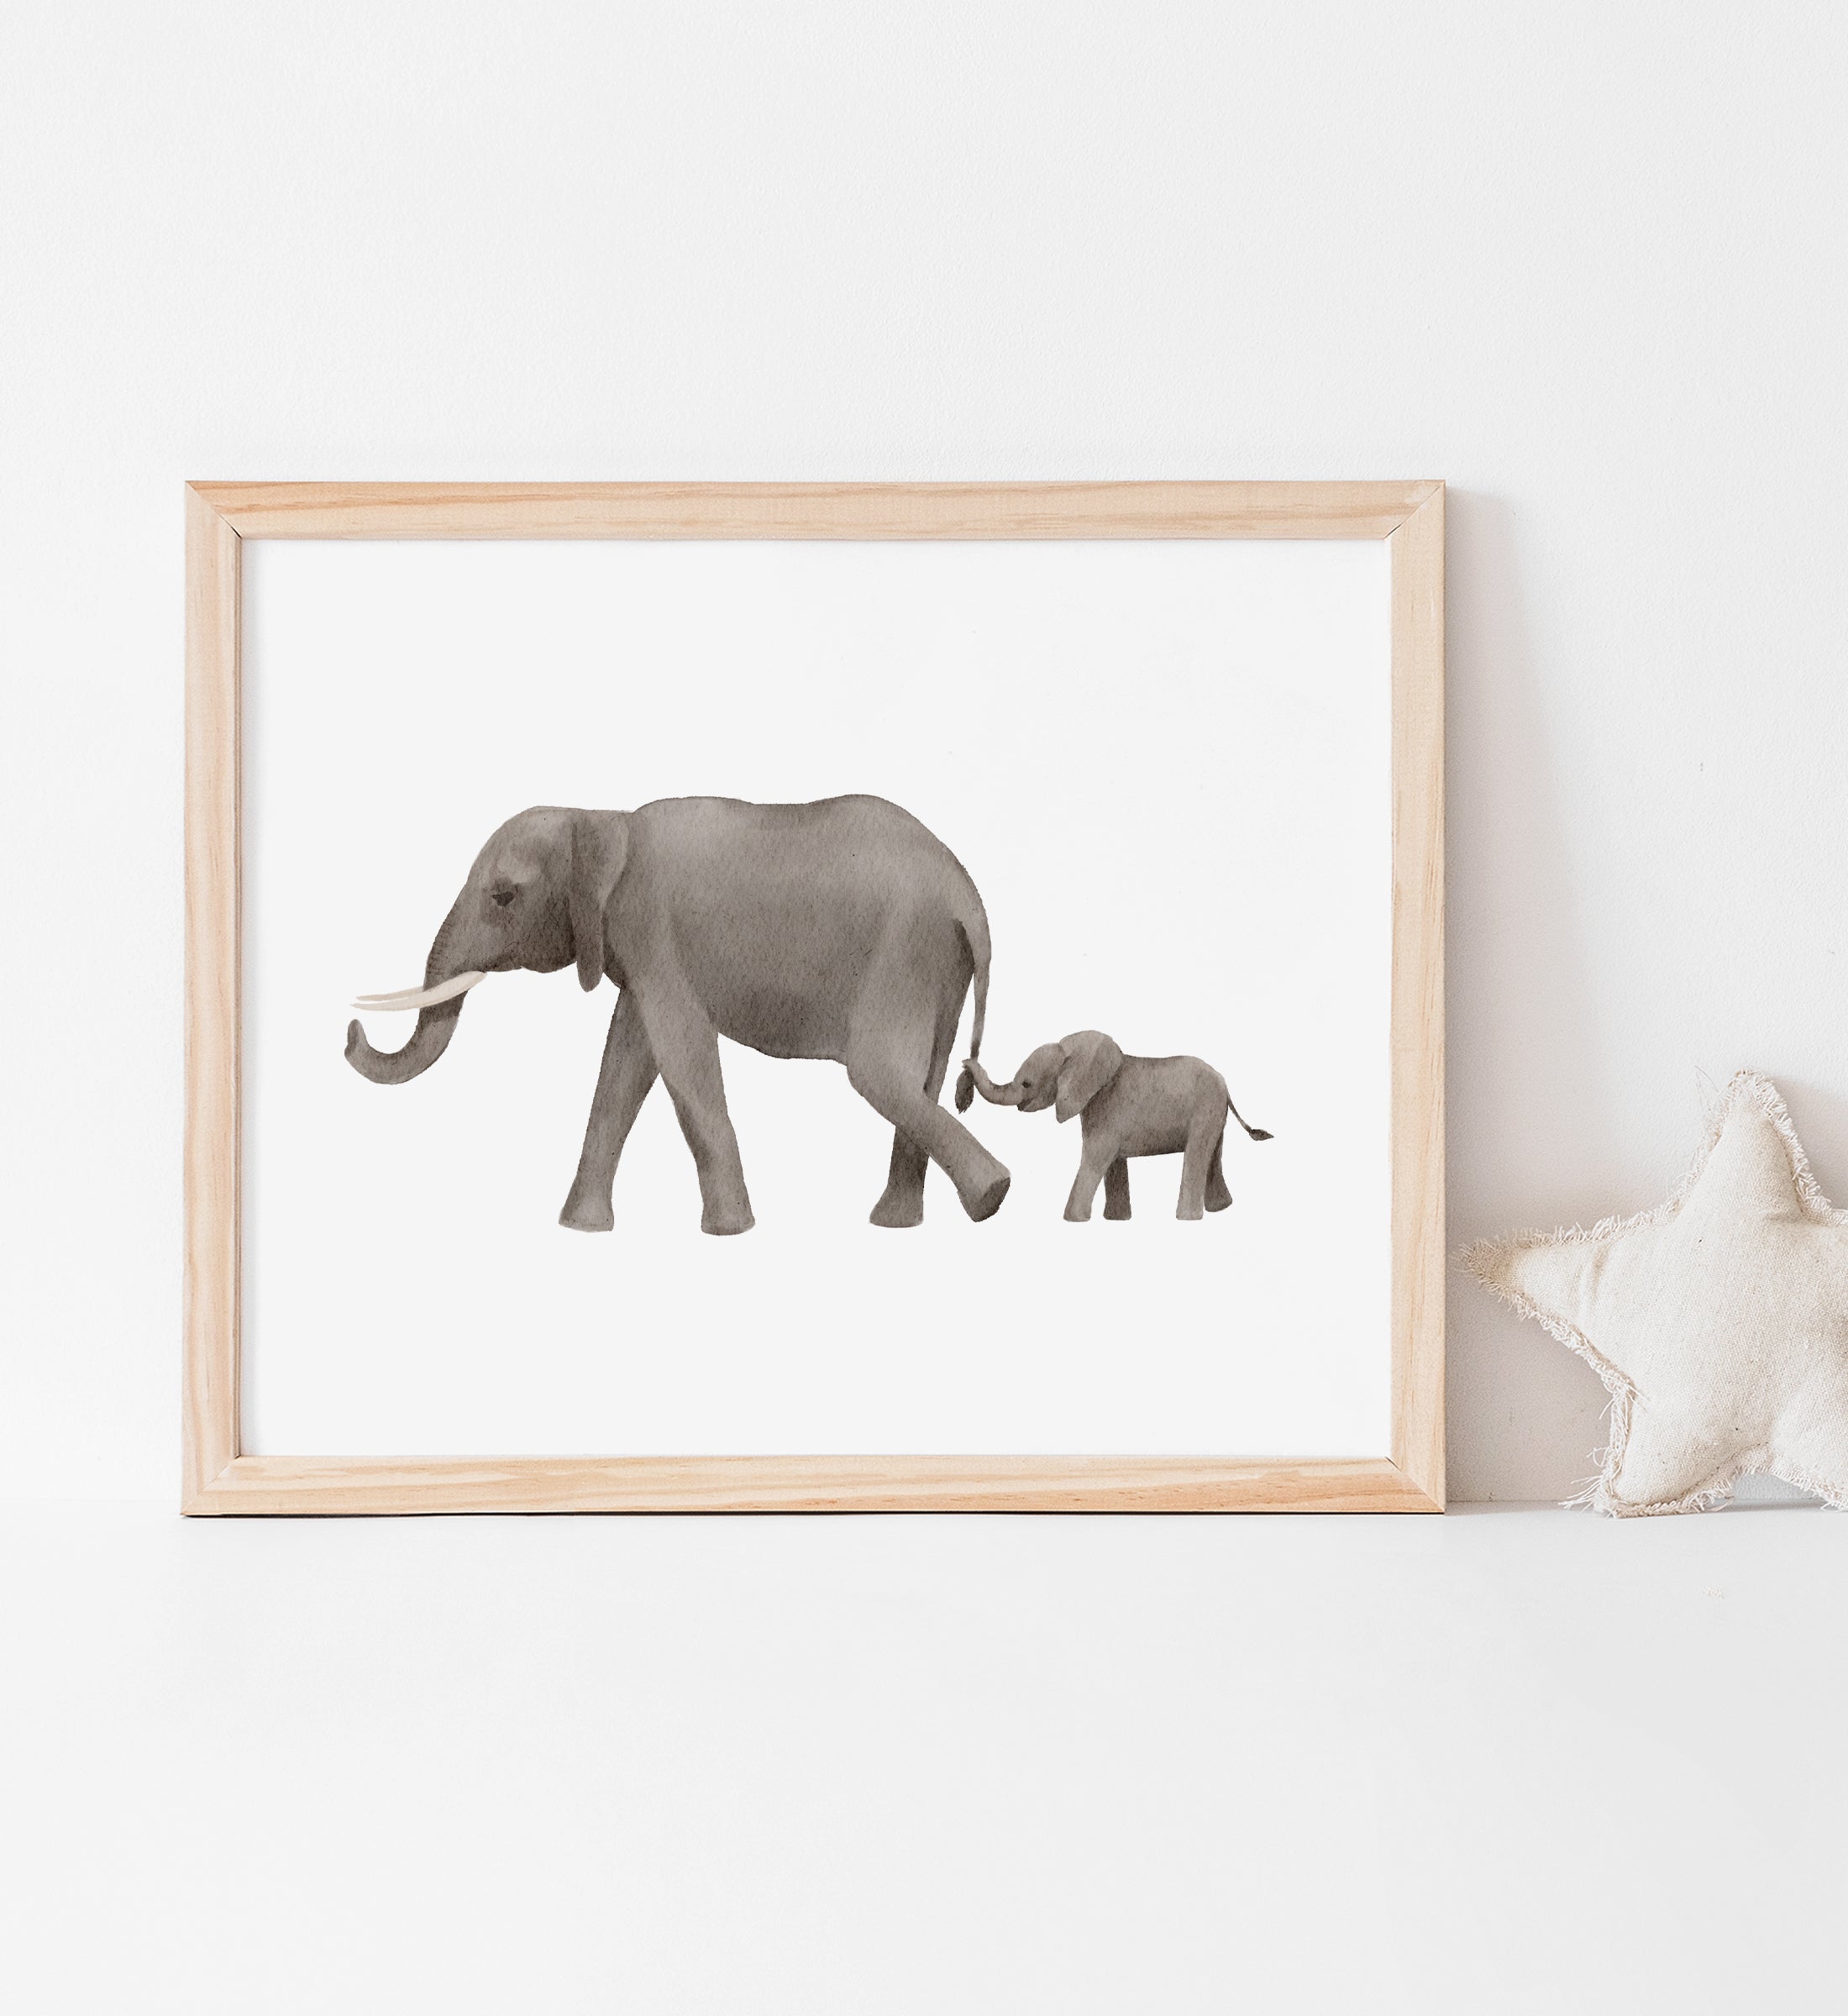  Elephant Print, Elephant Print Fabric, Elephant Printable Wall  Art, Elephant Printable, Family Prints, Elephant Prints Nursery : Handmade  Products